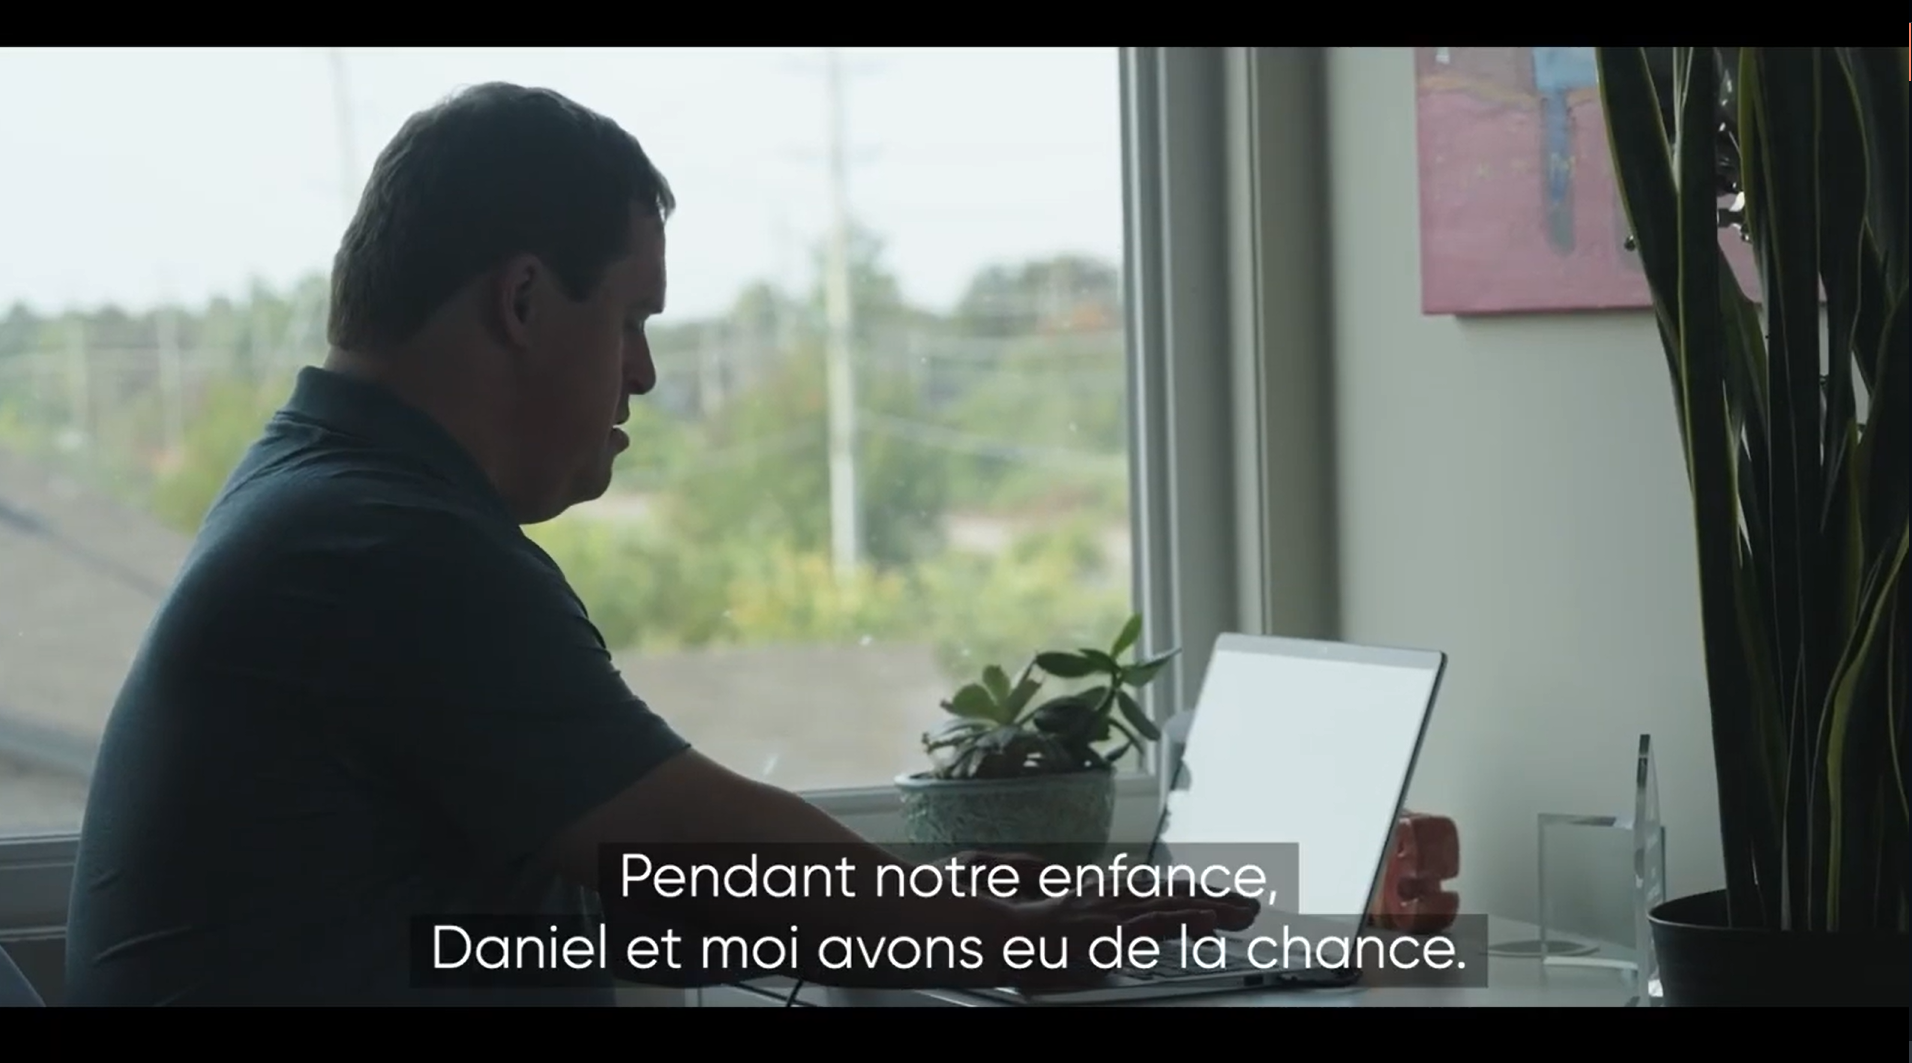 Capture d'écran de la minute 02:20 de la vidéo montrant Daniel s’assoire devant son ordinateur portatif et tape au clavier. La caméra s’arrête sur un portrait de famille. Daniel prend la photo et la regarde.